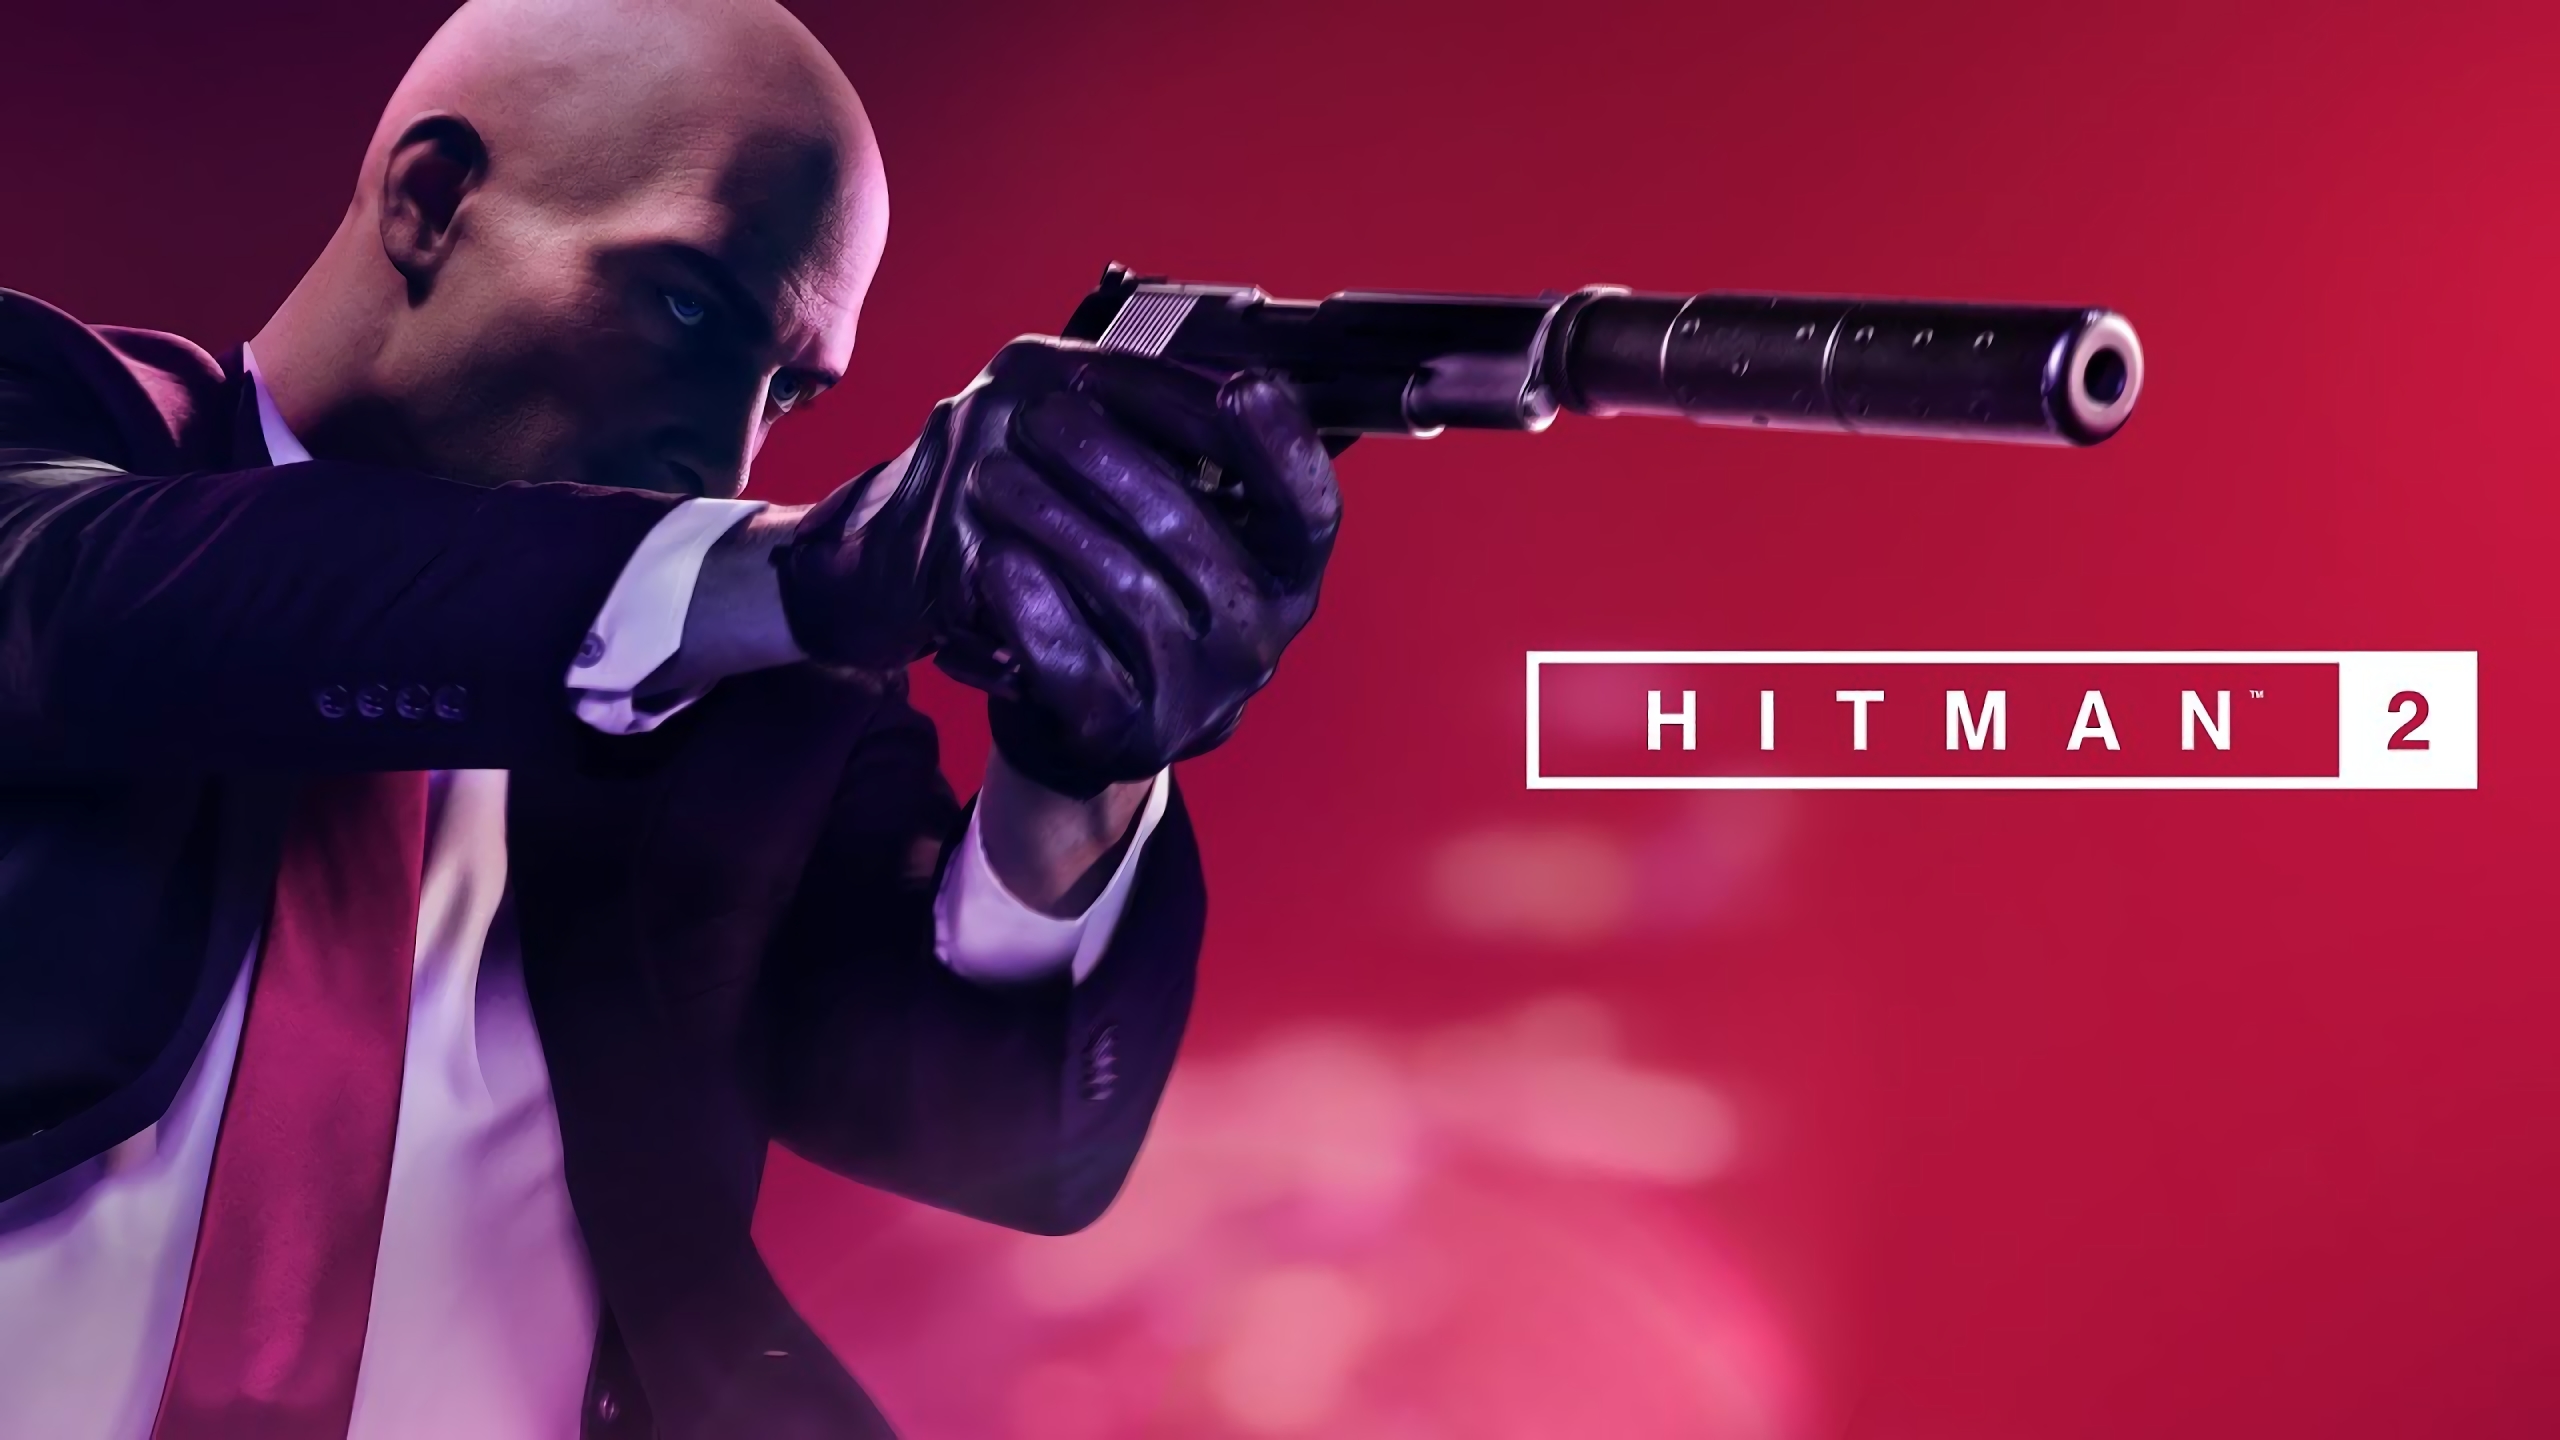 Hitman 2 Free Download Gametrex - the wild west roblox hitman